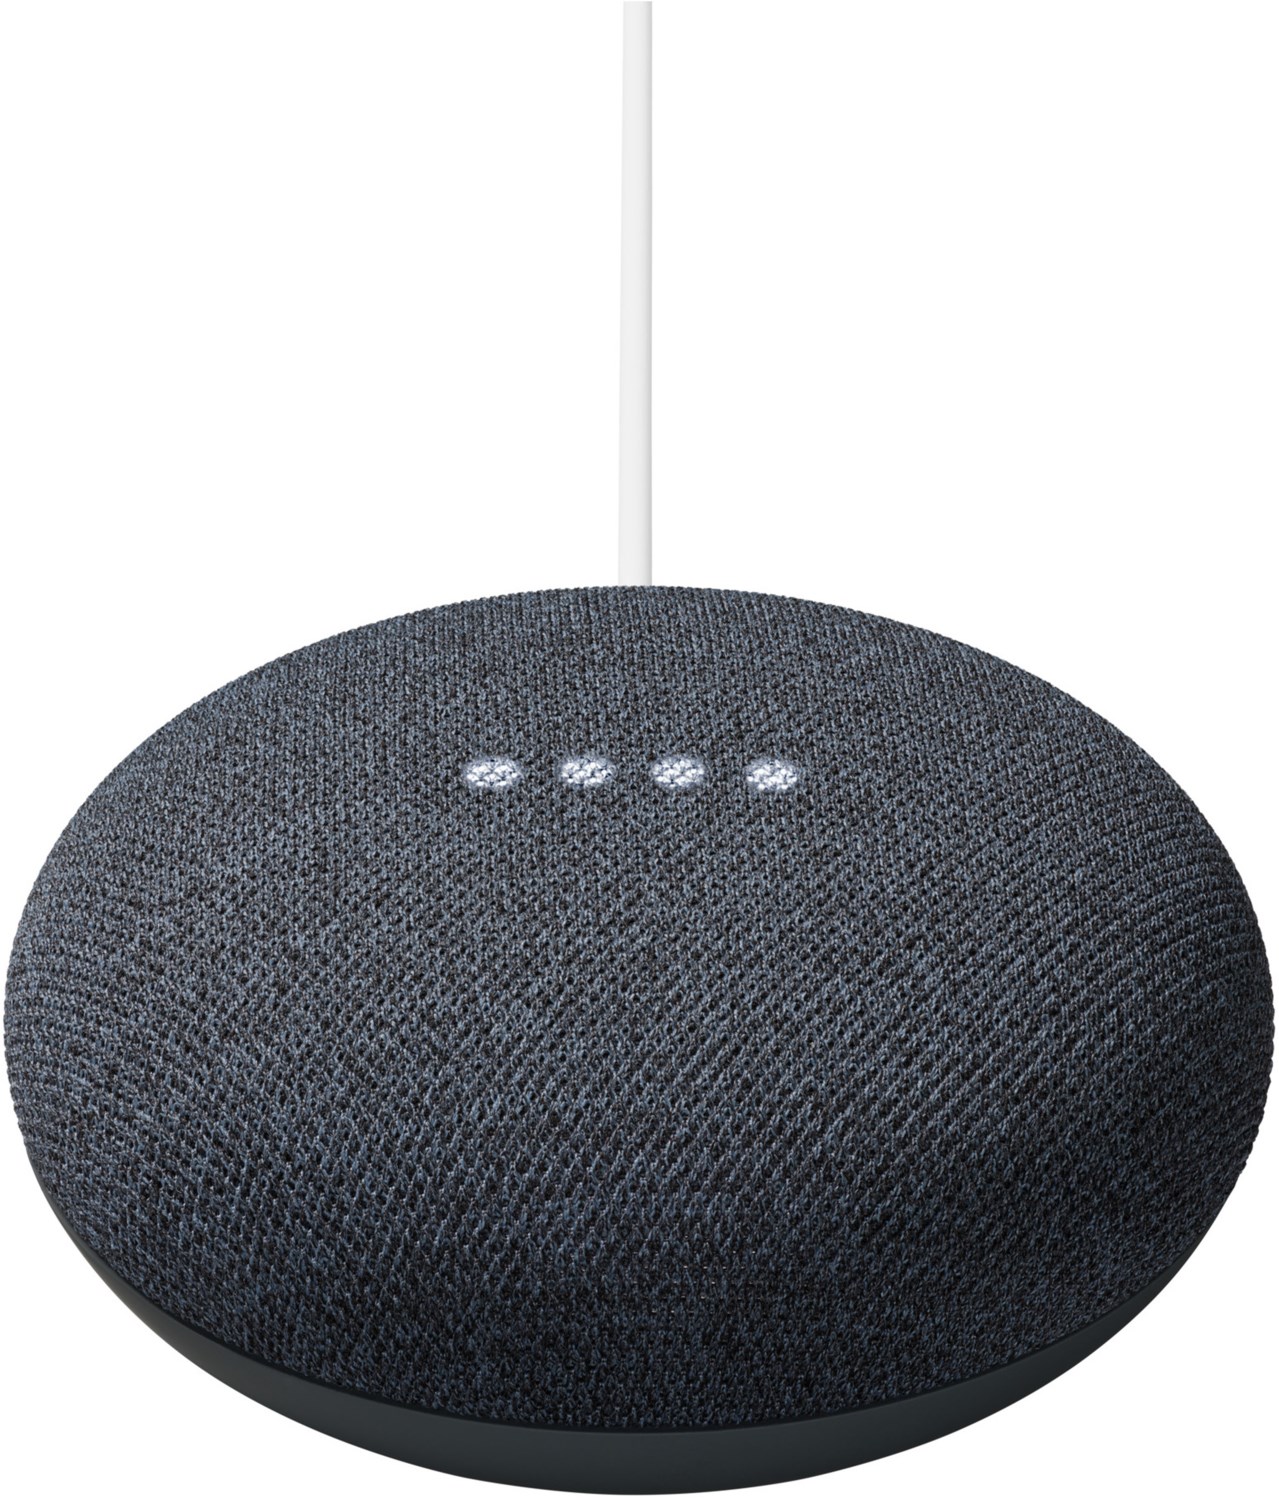 Image of Nest Mini Smart Speaker carbon